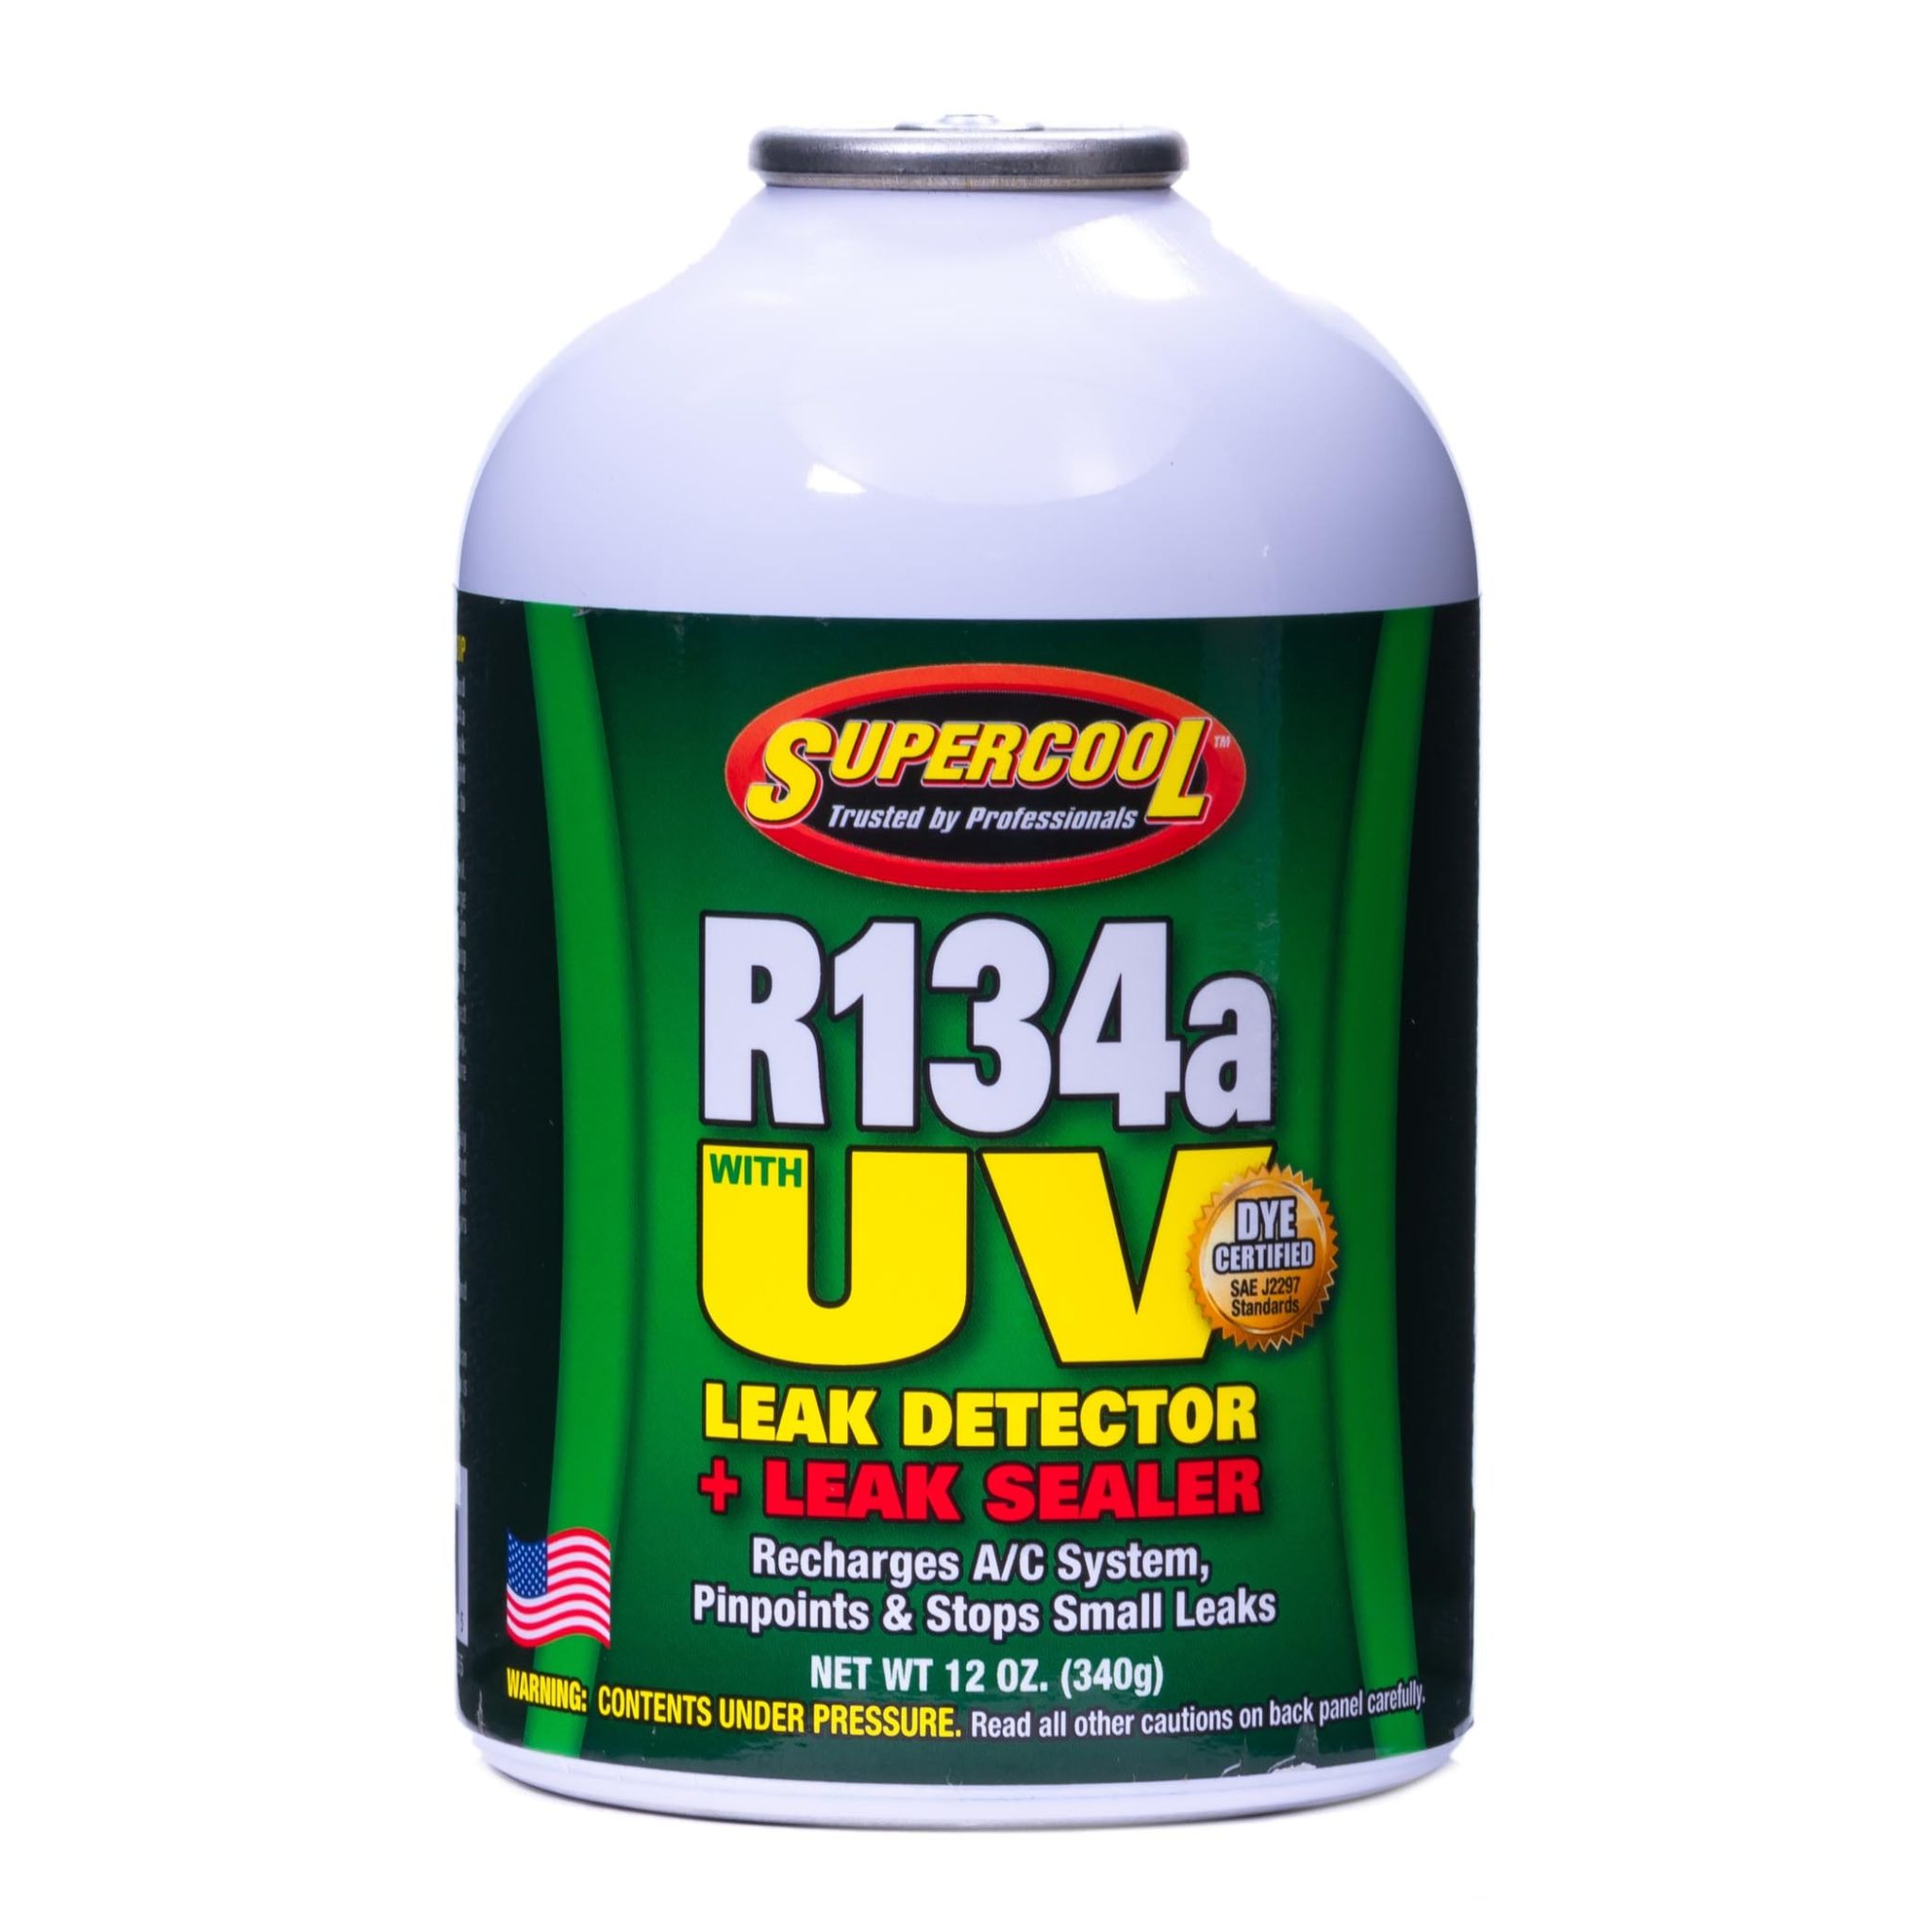 R134a مع صبغة U / V ومانع للتسرب 12 أونصة